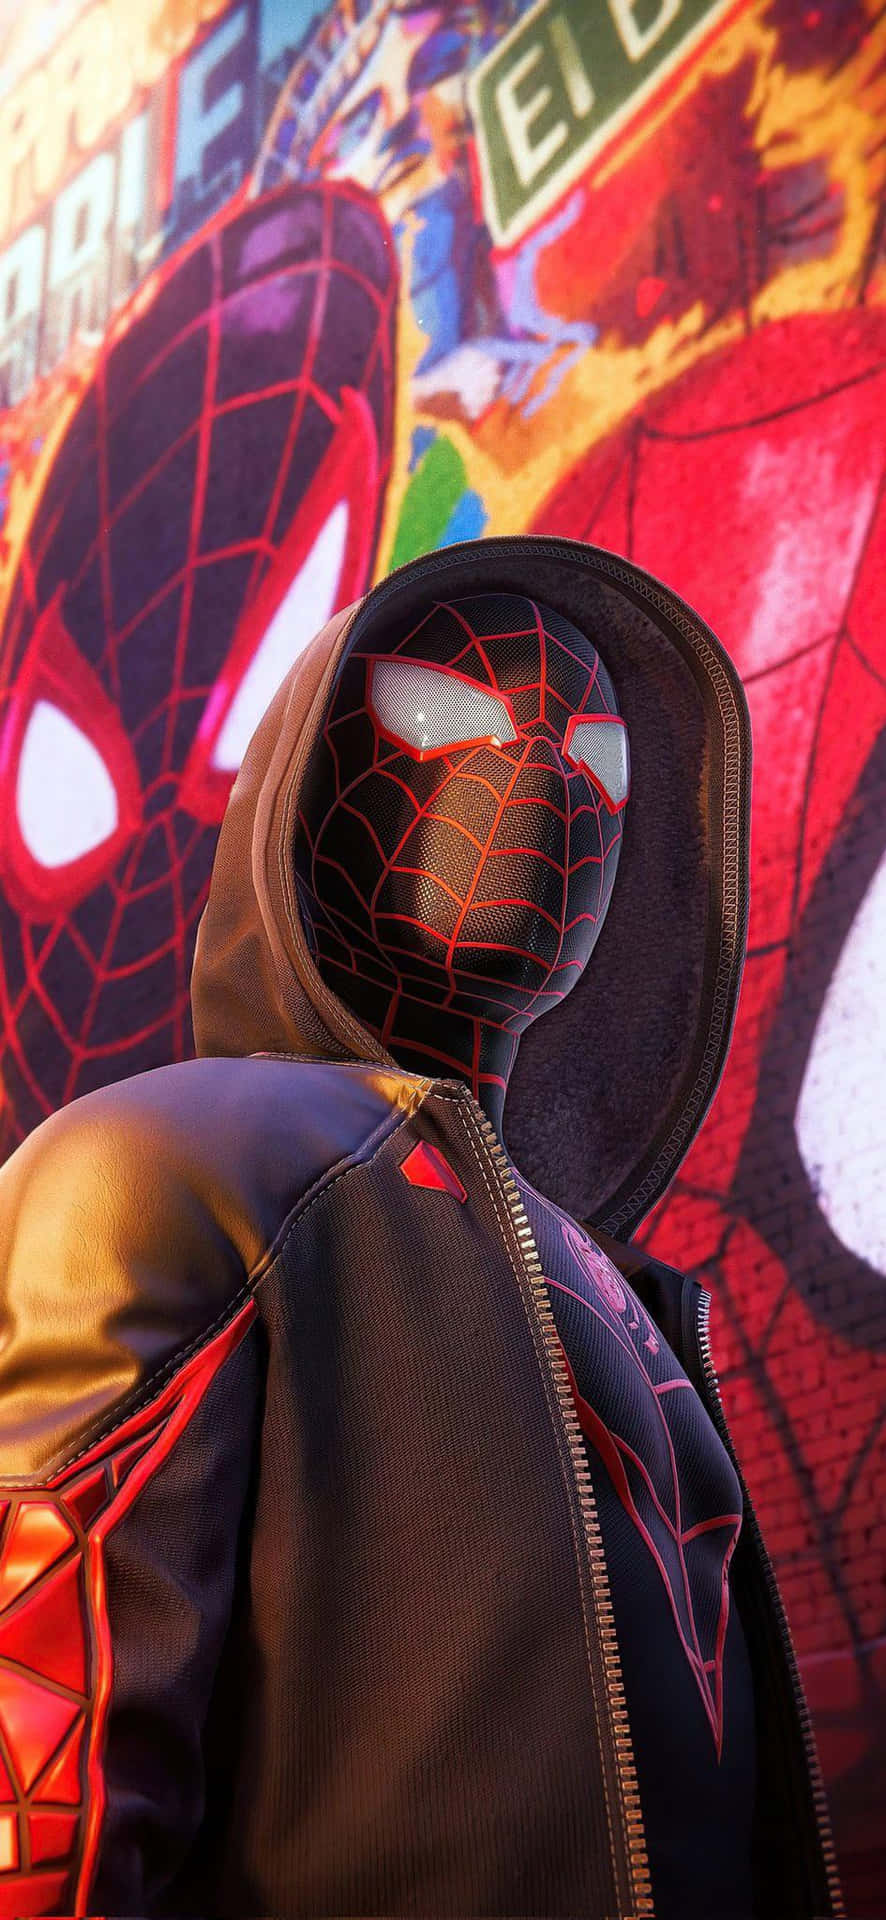 Spidermanconquista La Ciudad: Un Símbolo De Heroísmo